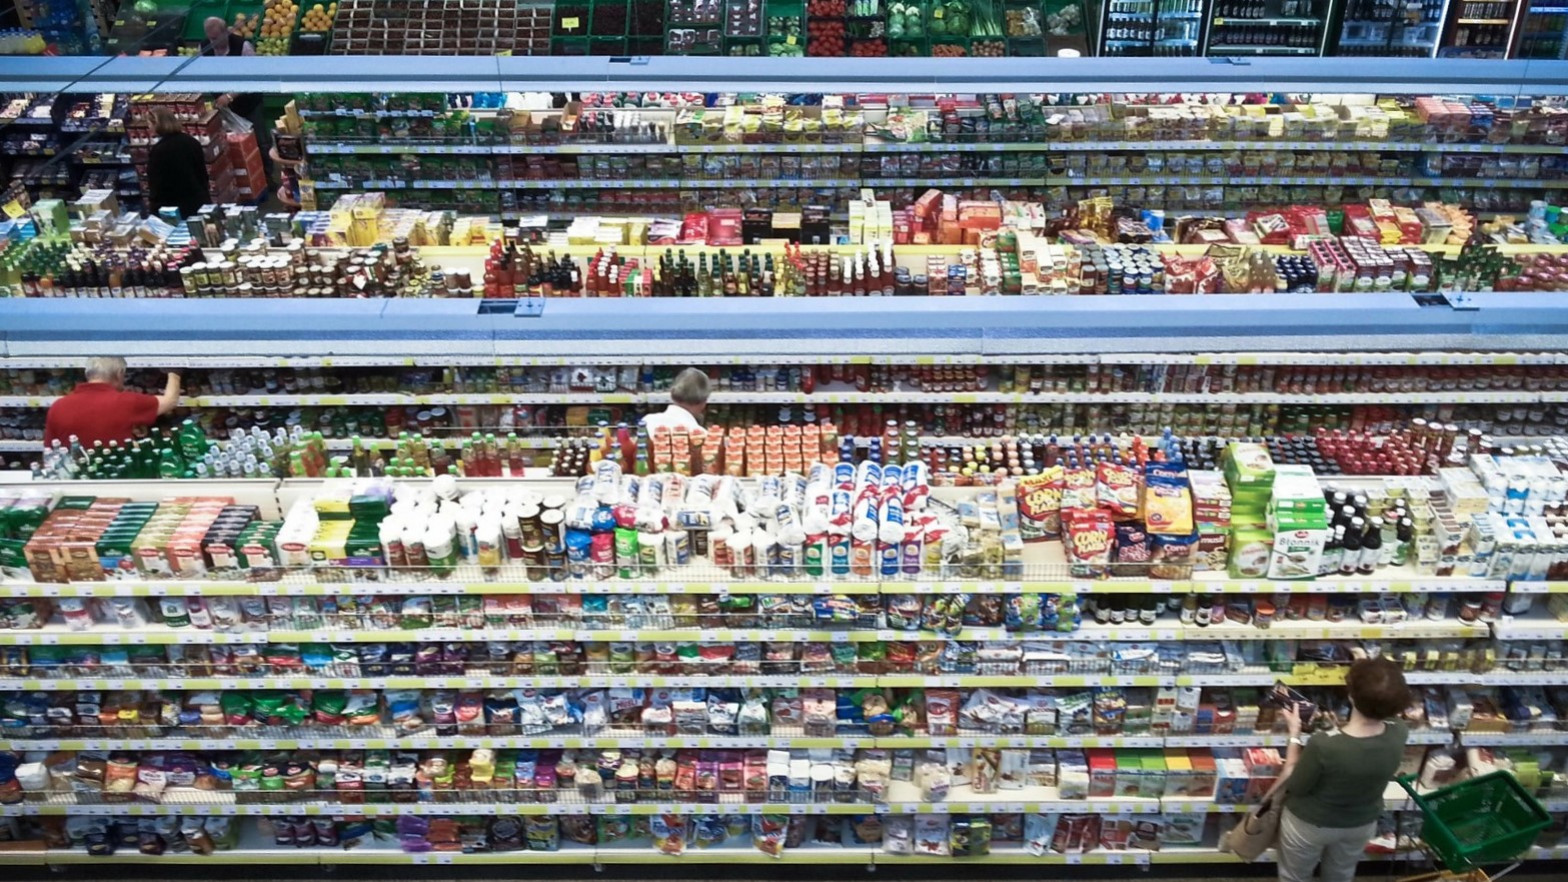 Butikshylder i polsk supermarked med masser af konventionelle fødevarer